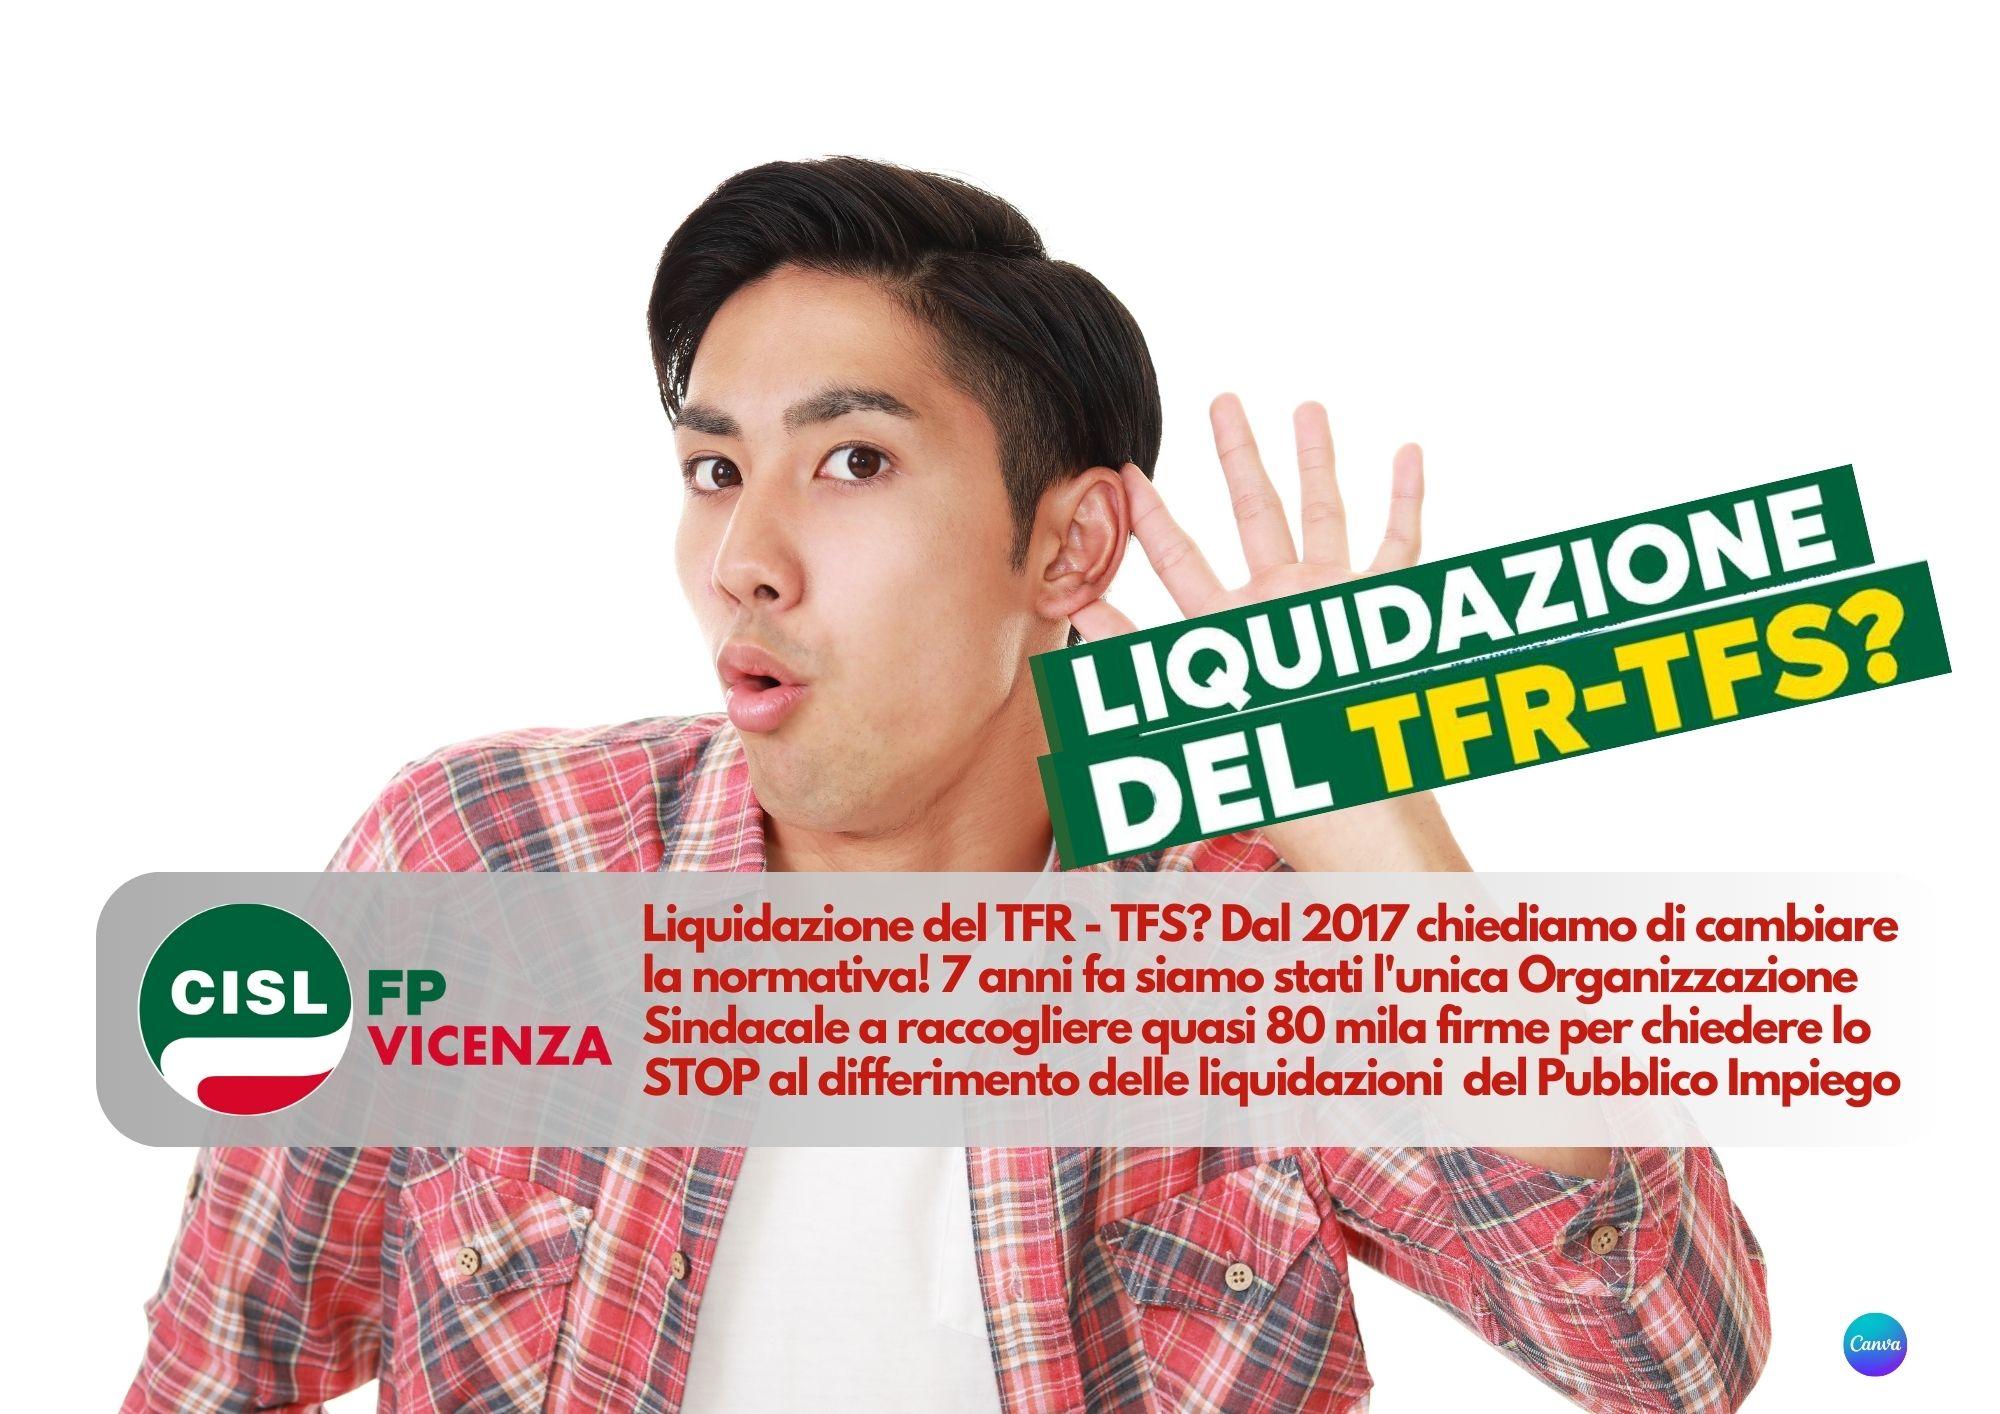 CISL FP Vicenza. Liquidazione del TFR - TFS? Dal 2017 chiediamo di cambiare la normativa!